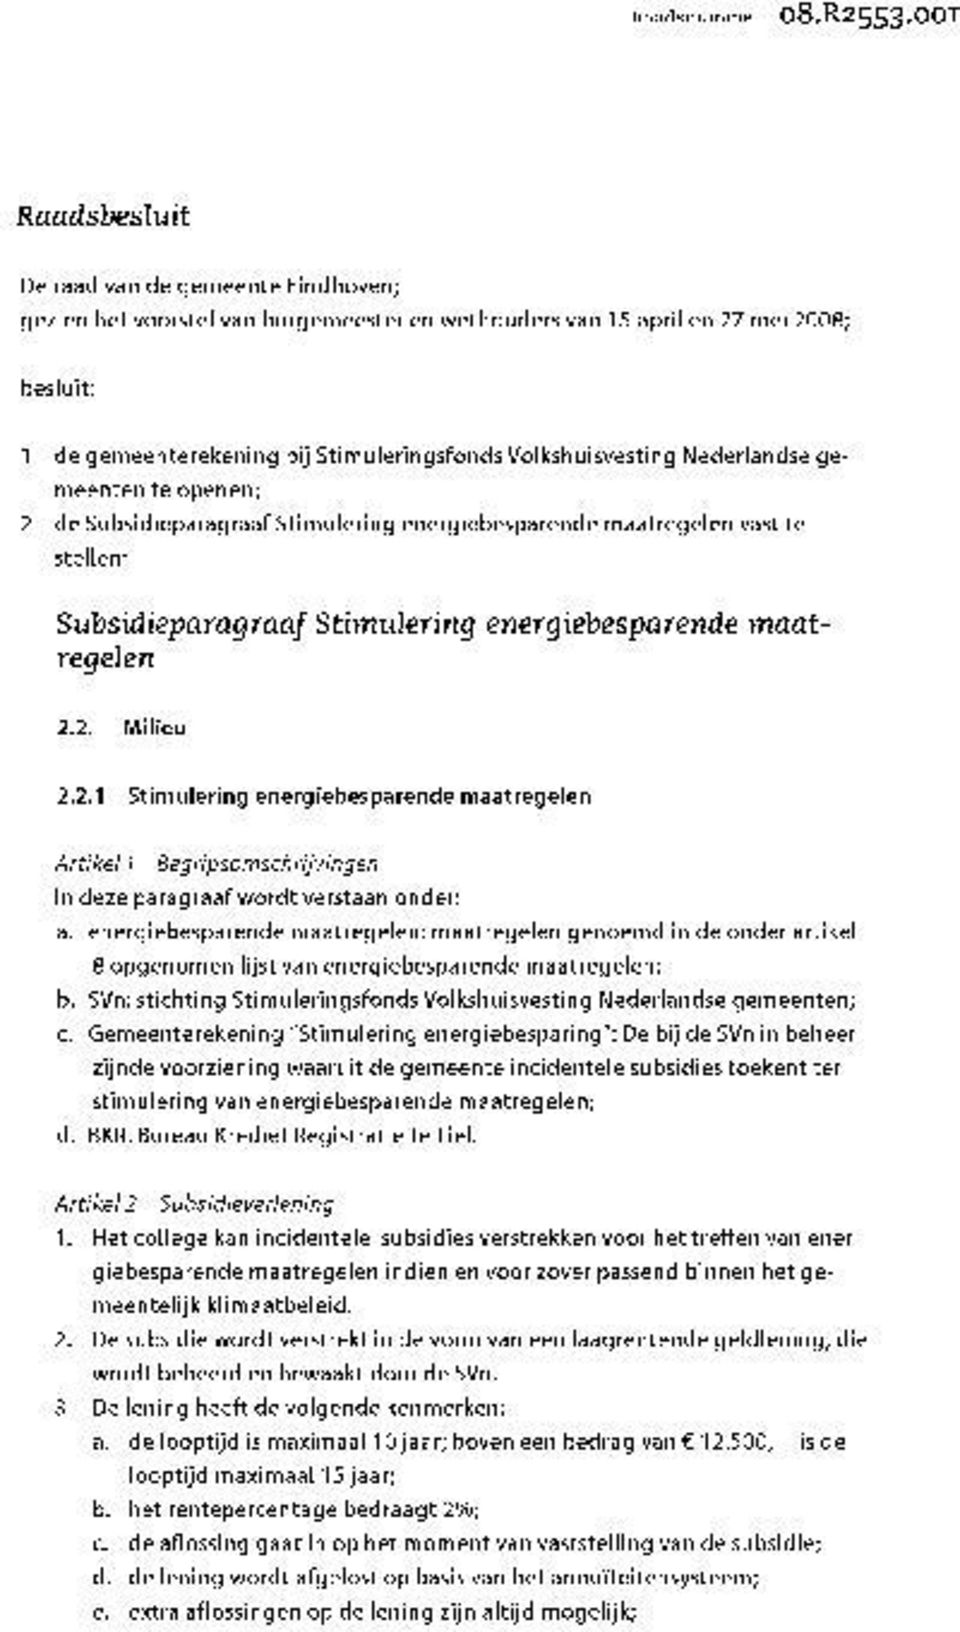 Volkshuisvesting Nederlandse gemeenten te openen; 2 de Subsidieparagraaf Stimulering energiebesparende maatregelen vast te stellen: Subsidieparagraaf Stimulering energiebesparende maatregelen 2.2. Milieu 2.